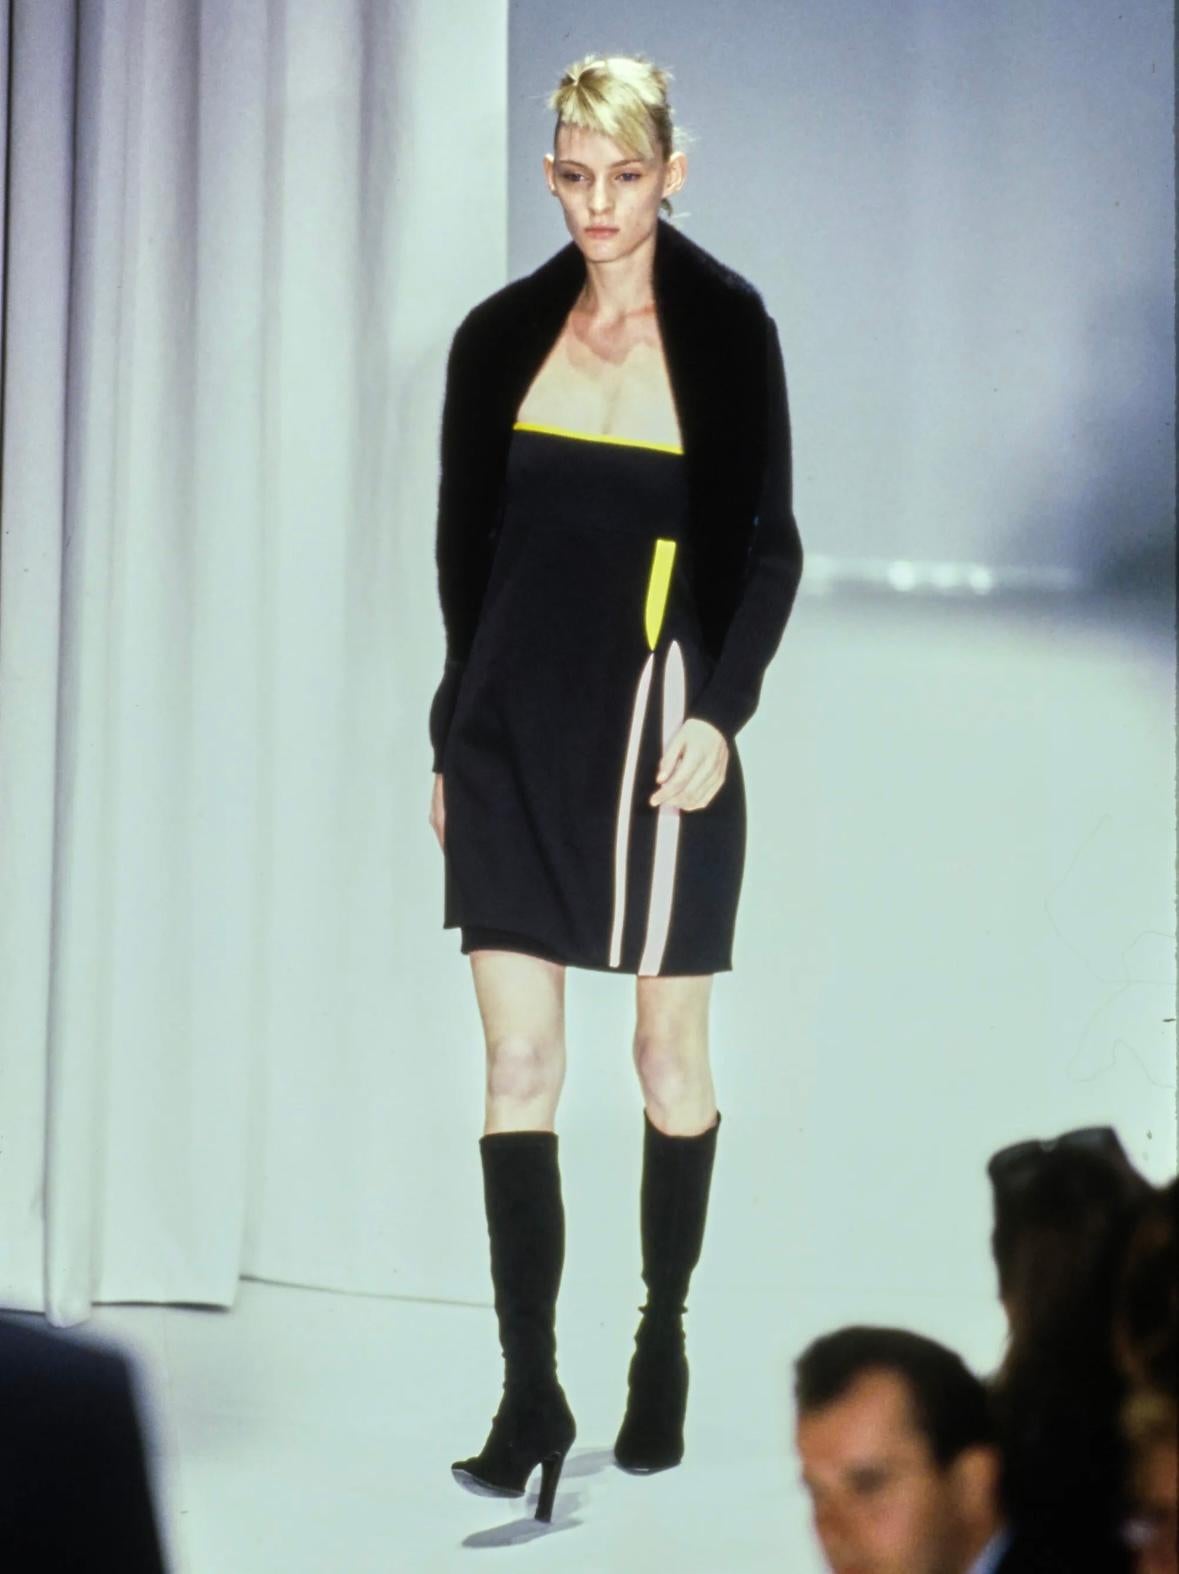 Issue de la dernière collection de Gianni Versace dans sa maison de couture éponyme, cette mini robe Gianni Versace a fait ses débuts sur le défilé de la saison dans le cadre du look 40, porté par le mannequin Gianni Versace.  Amy Wesson. Cette chic